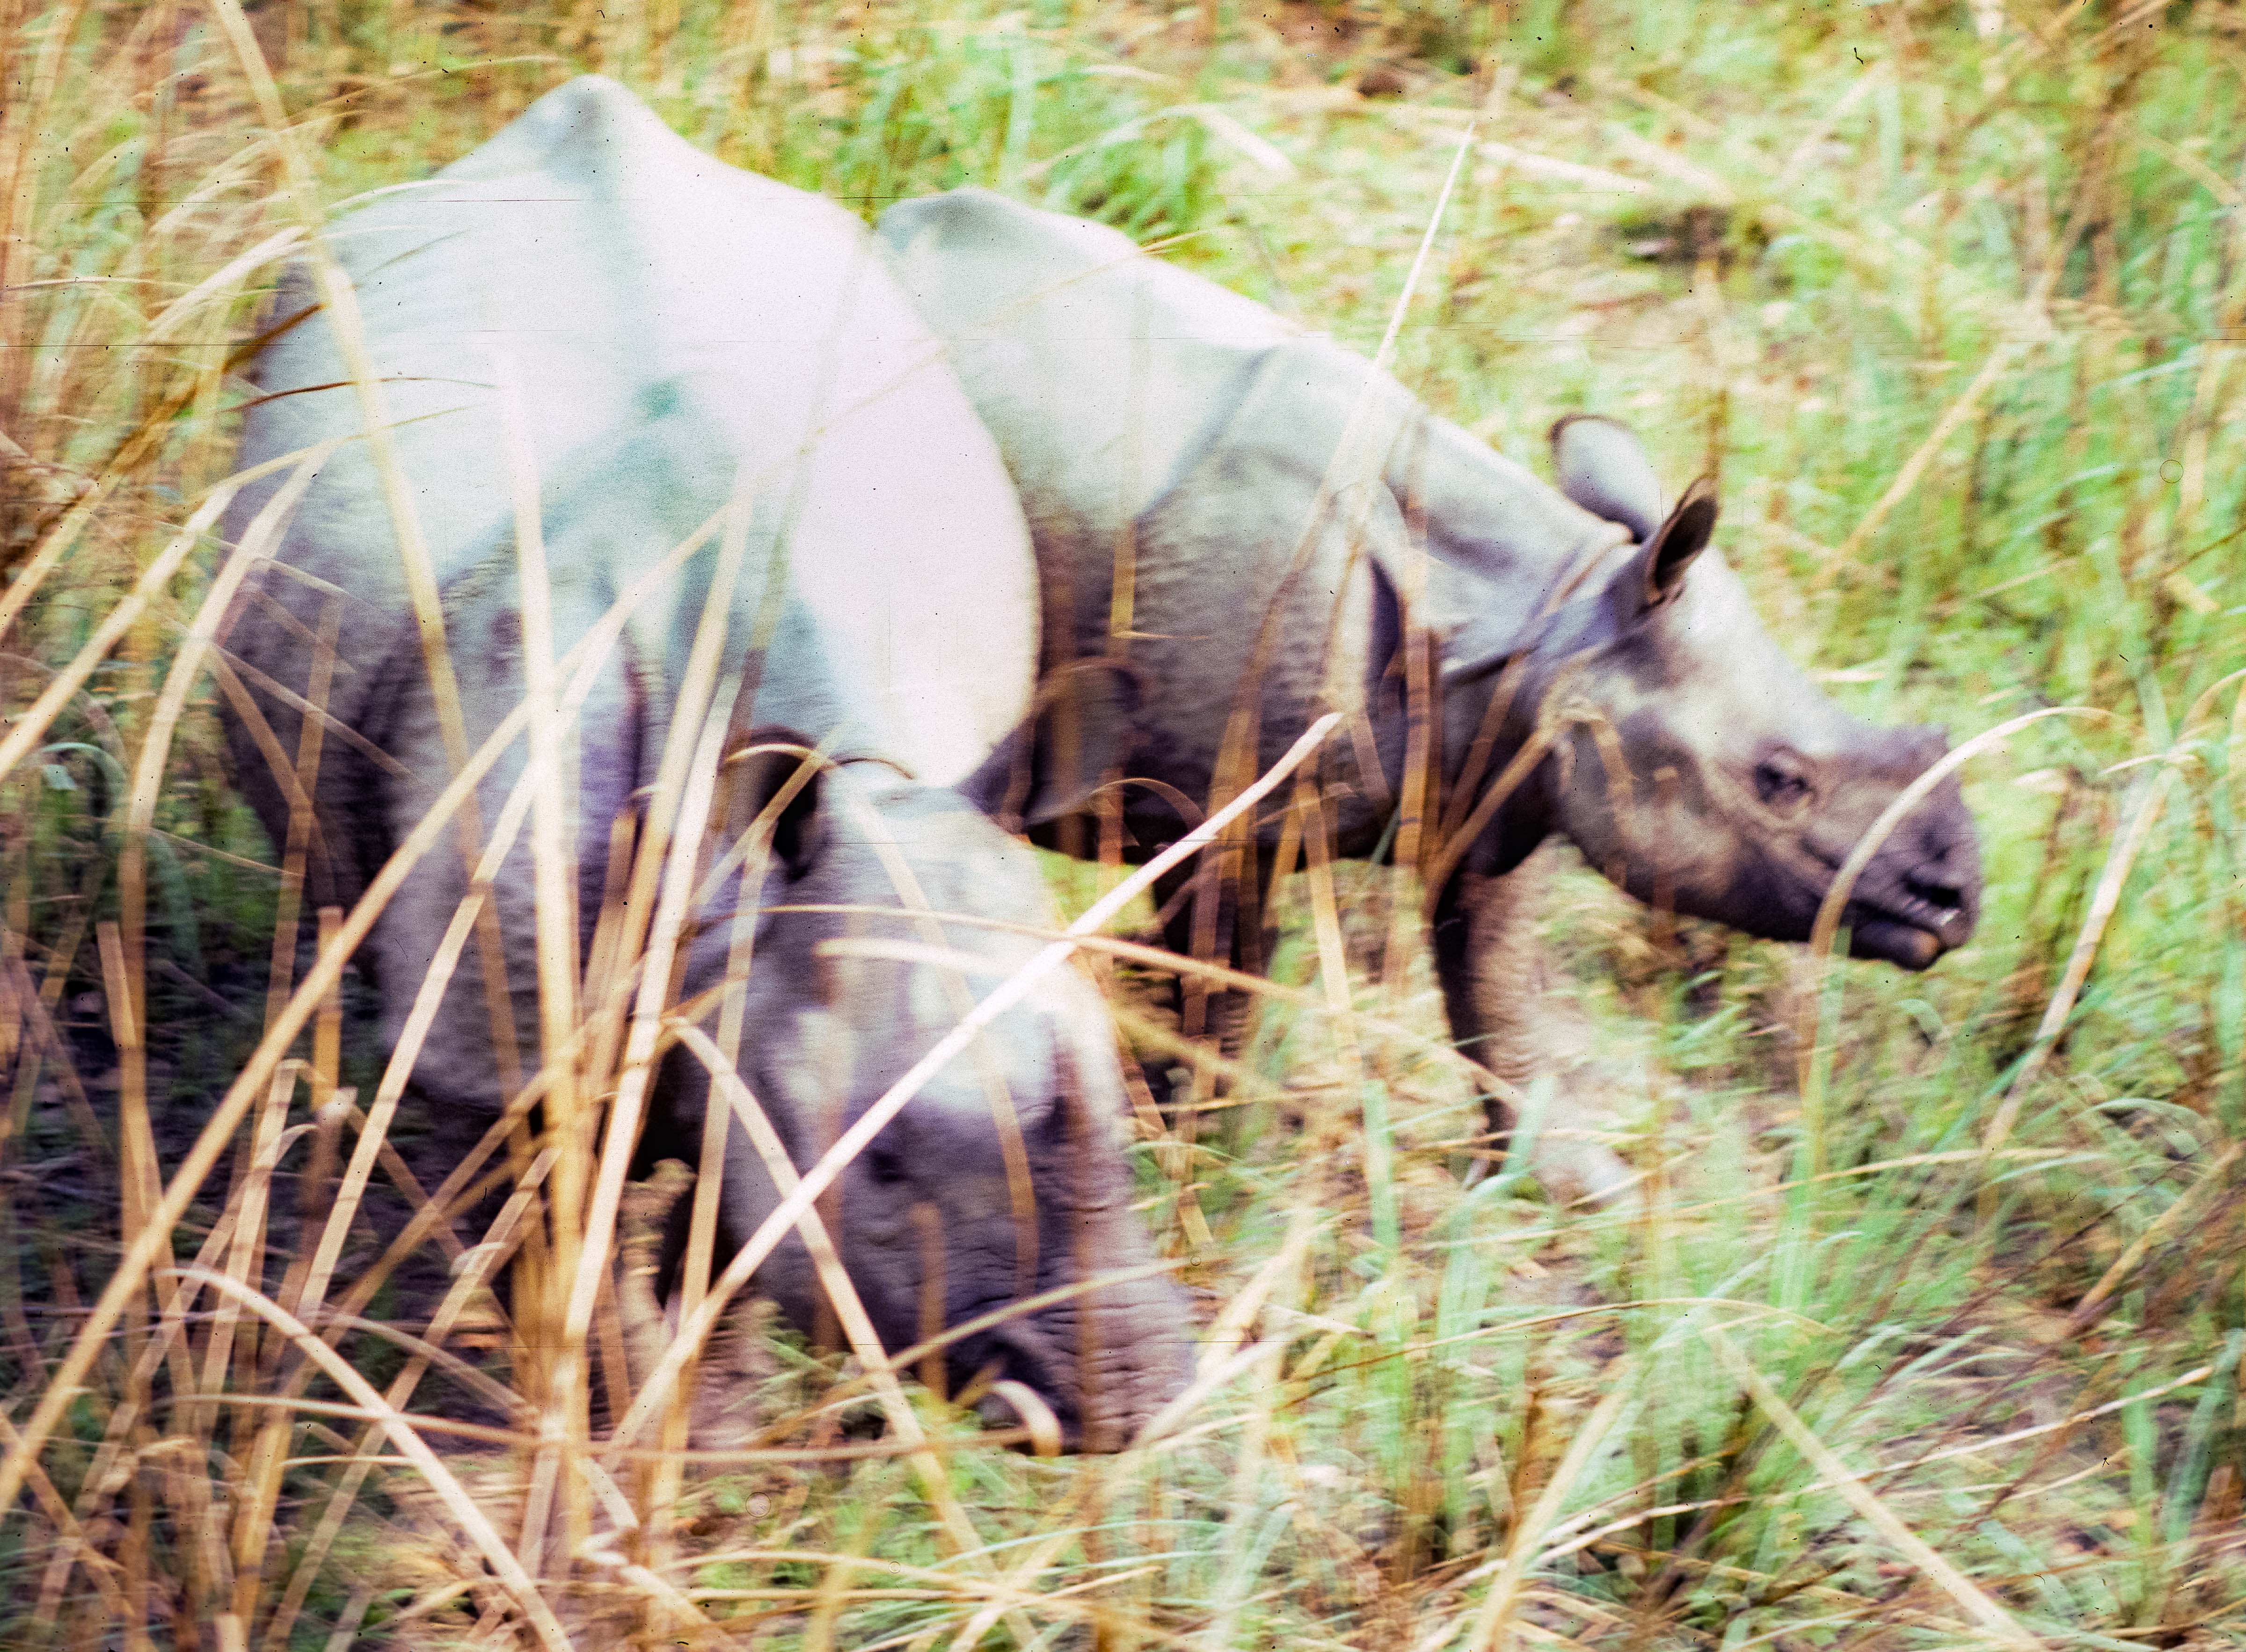 Nepal, Chitwan, Rhinos Below Me, 1984